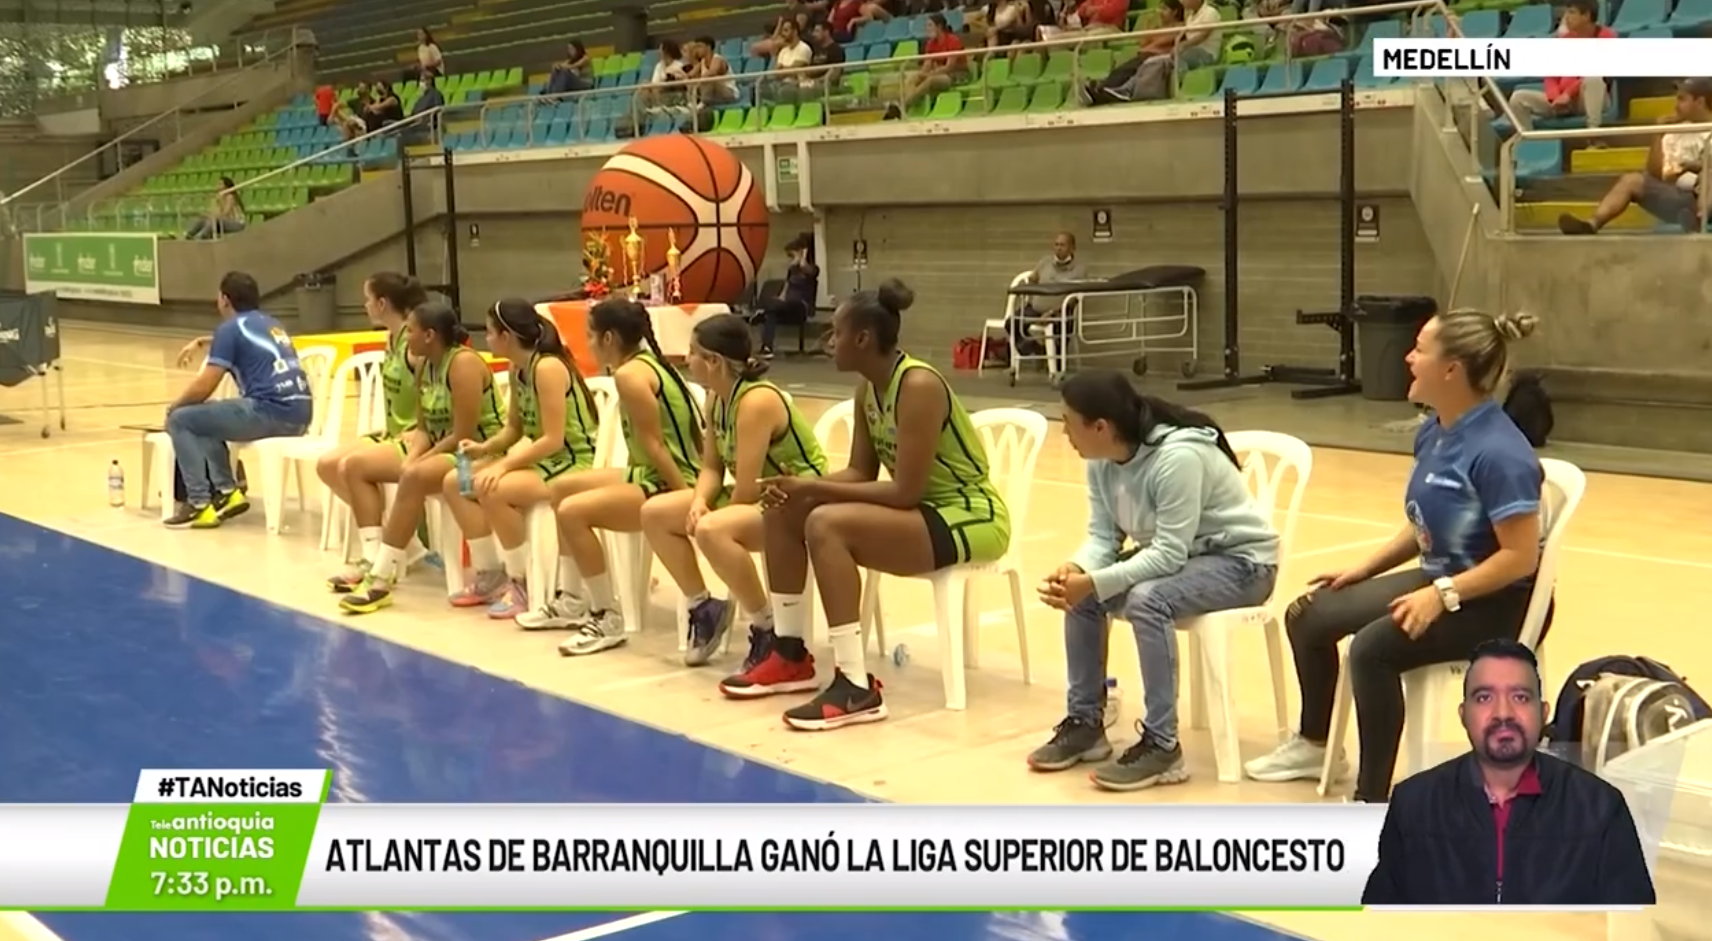 Atlantas de Barranquilla ganó la Liga Superior de Baloncesto